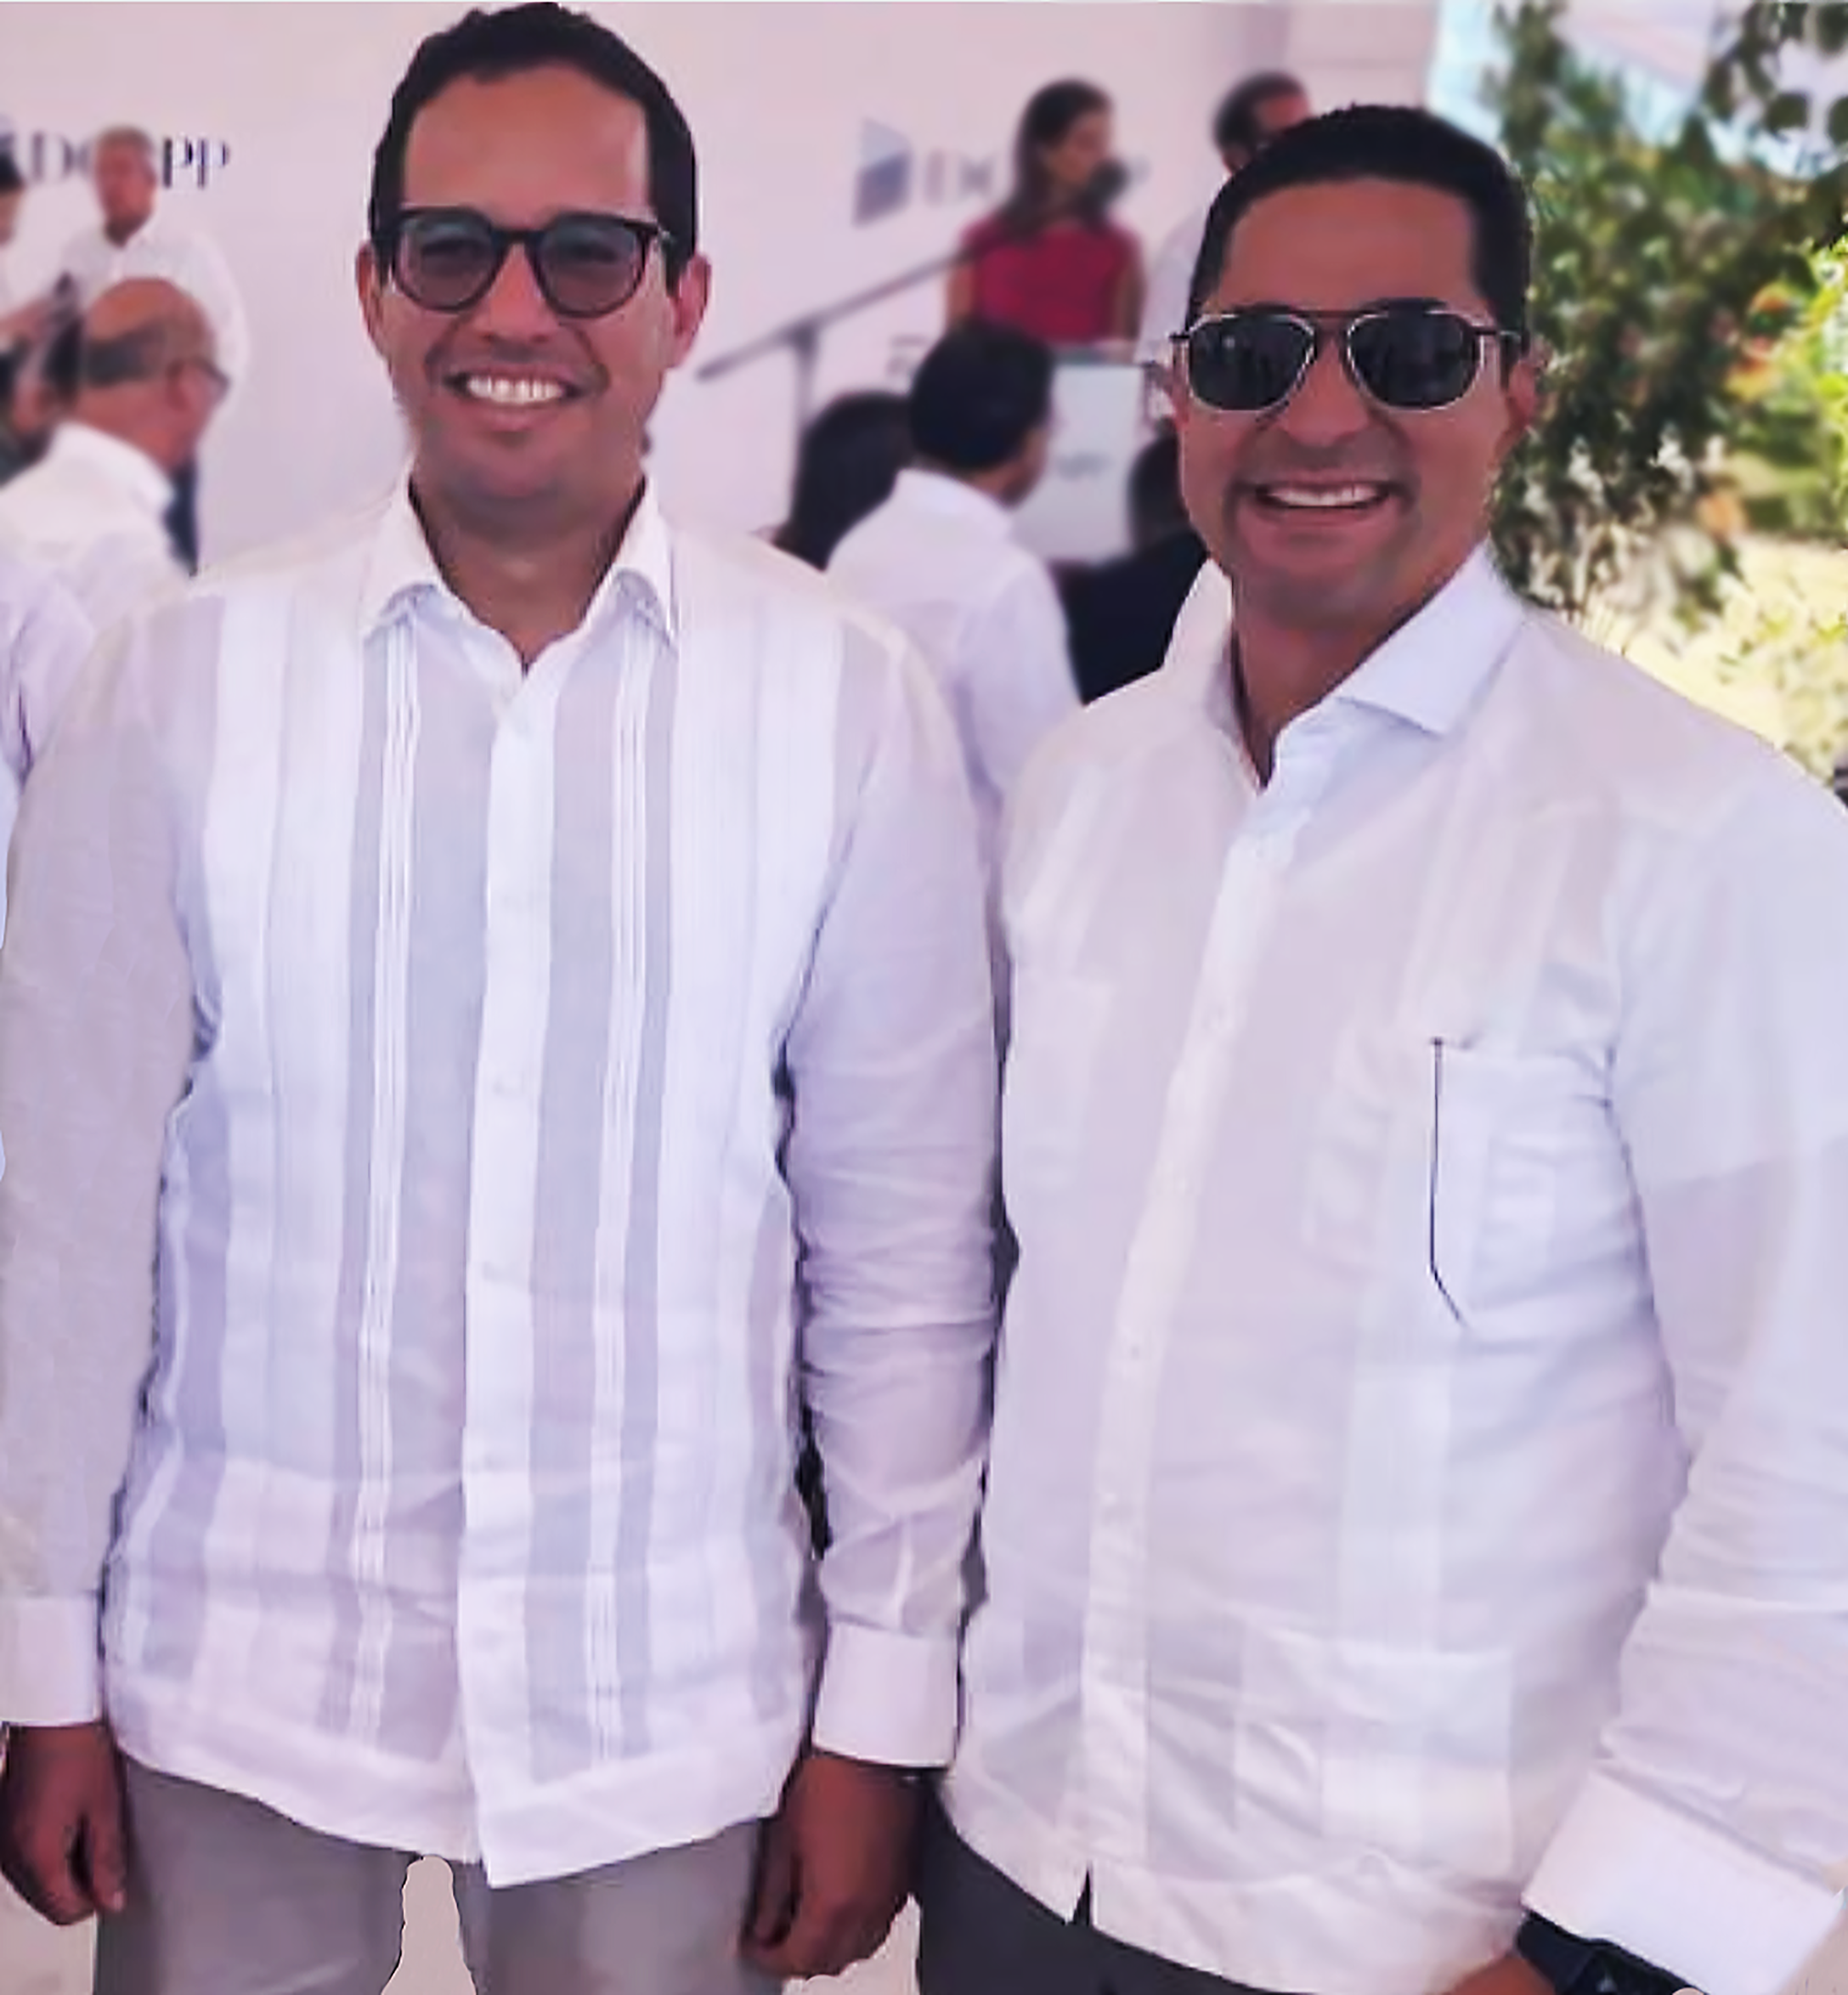 Sigmun Freund director de la Dirección General de Alianzas Público-Privadas y Jorge Subero Medina presidente ejecutivo (CEO) de Cap Cana